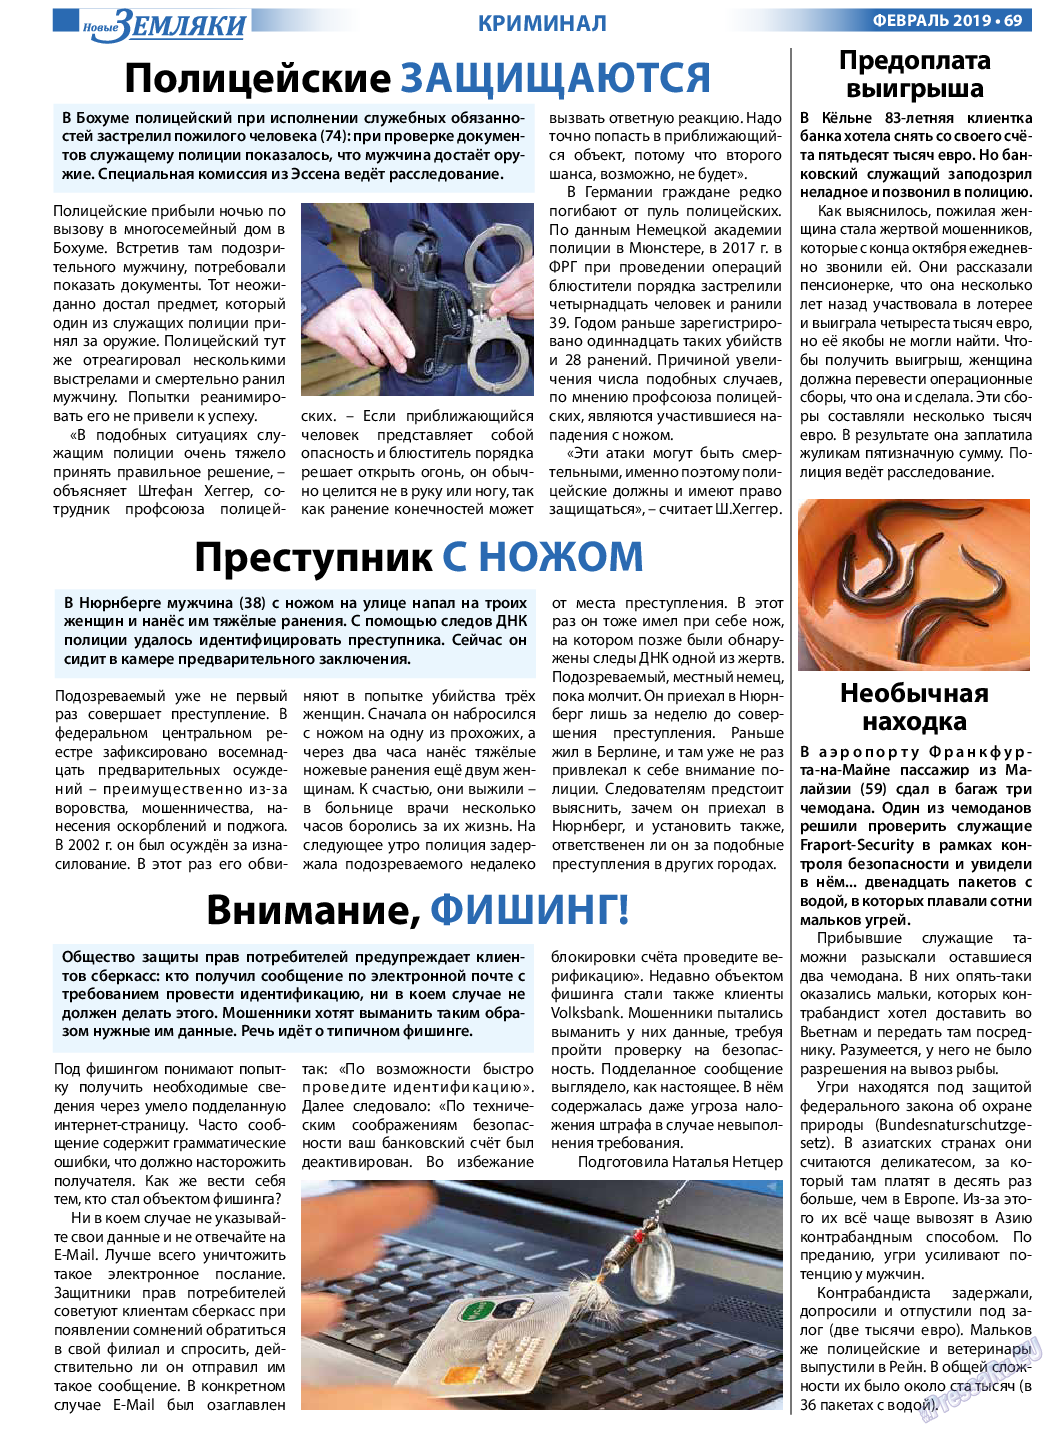 Новые Земляки (газета). 2019 год, номер 2, стр. 69